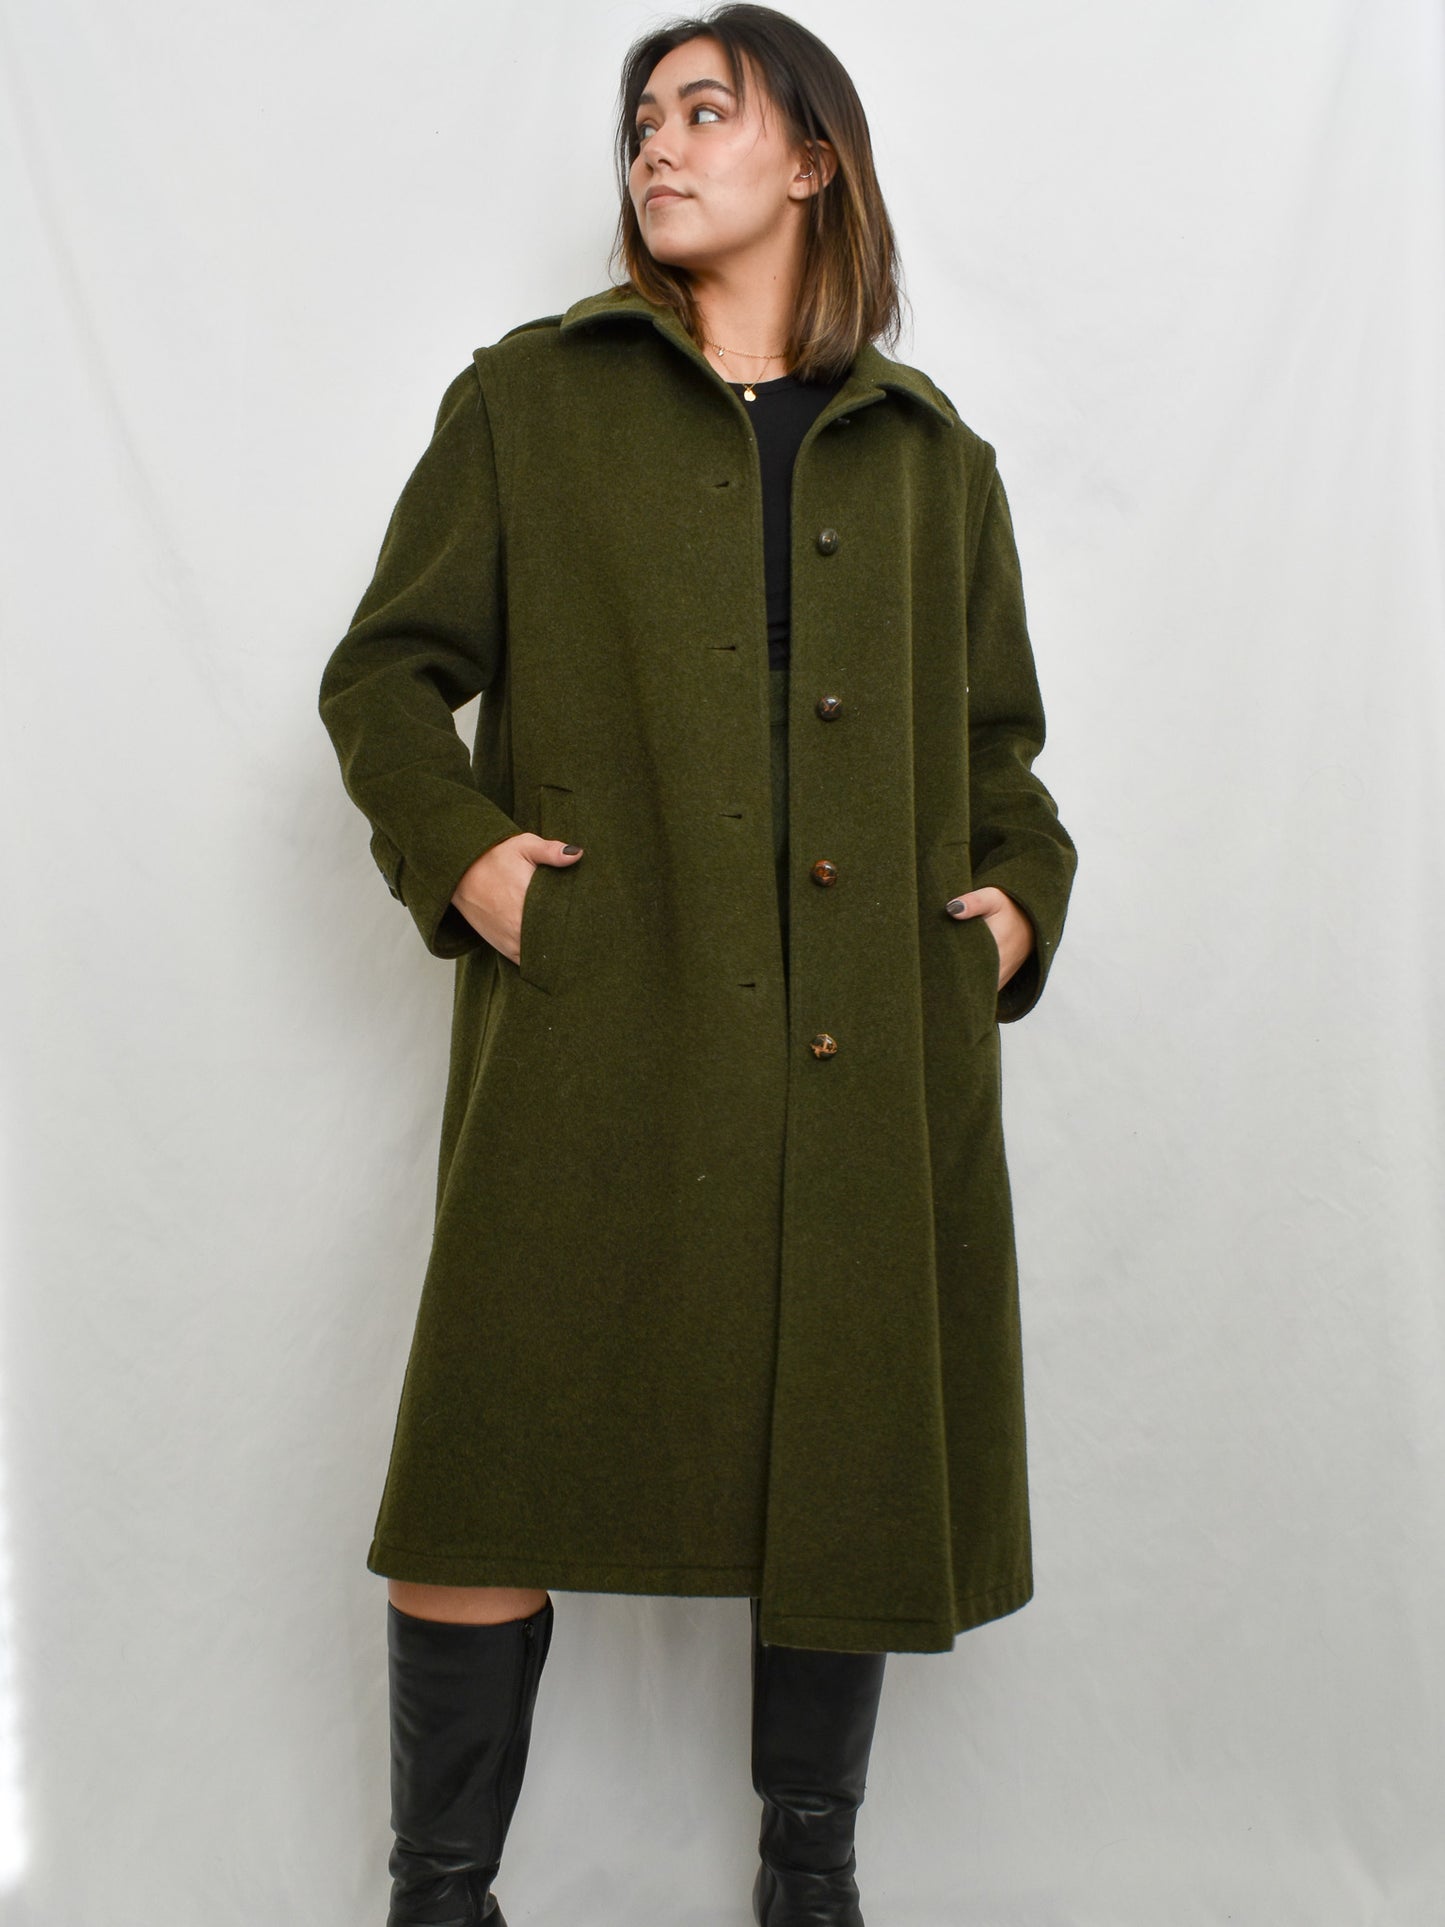 Green Coat (M)